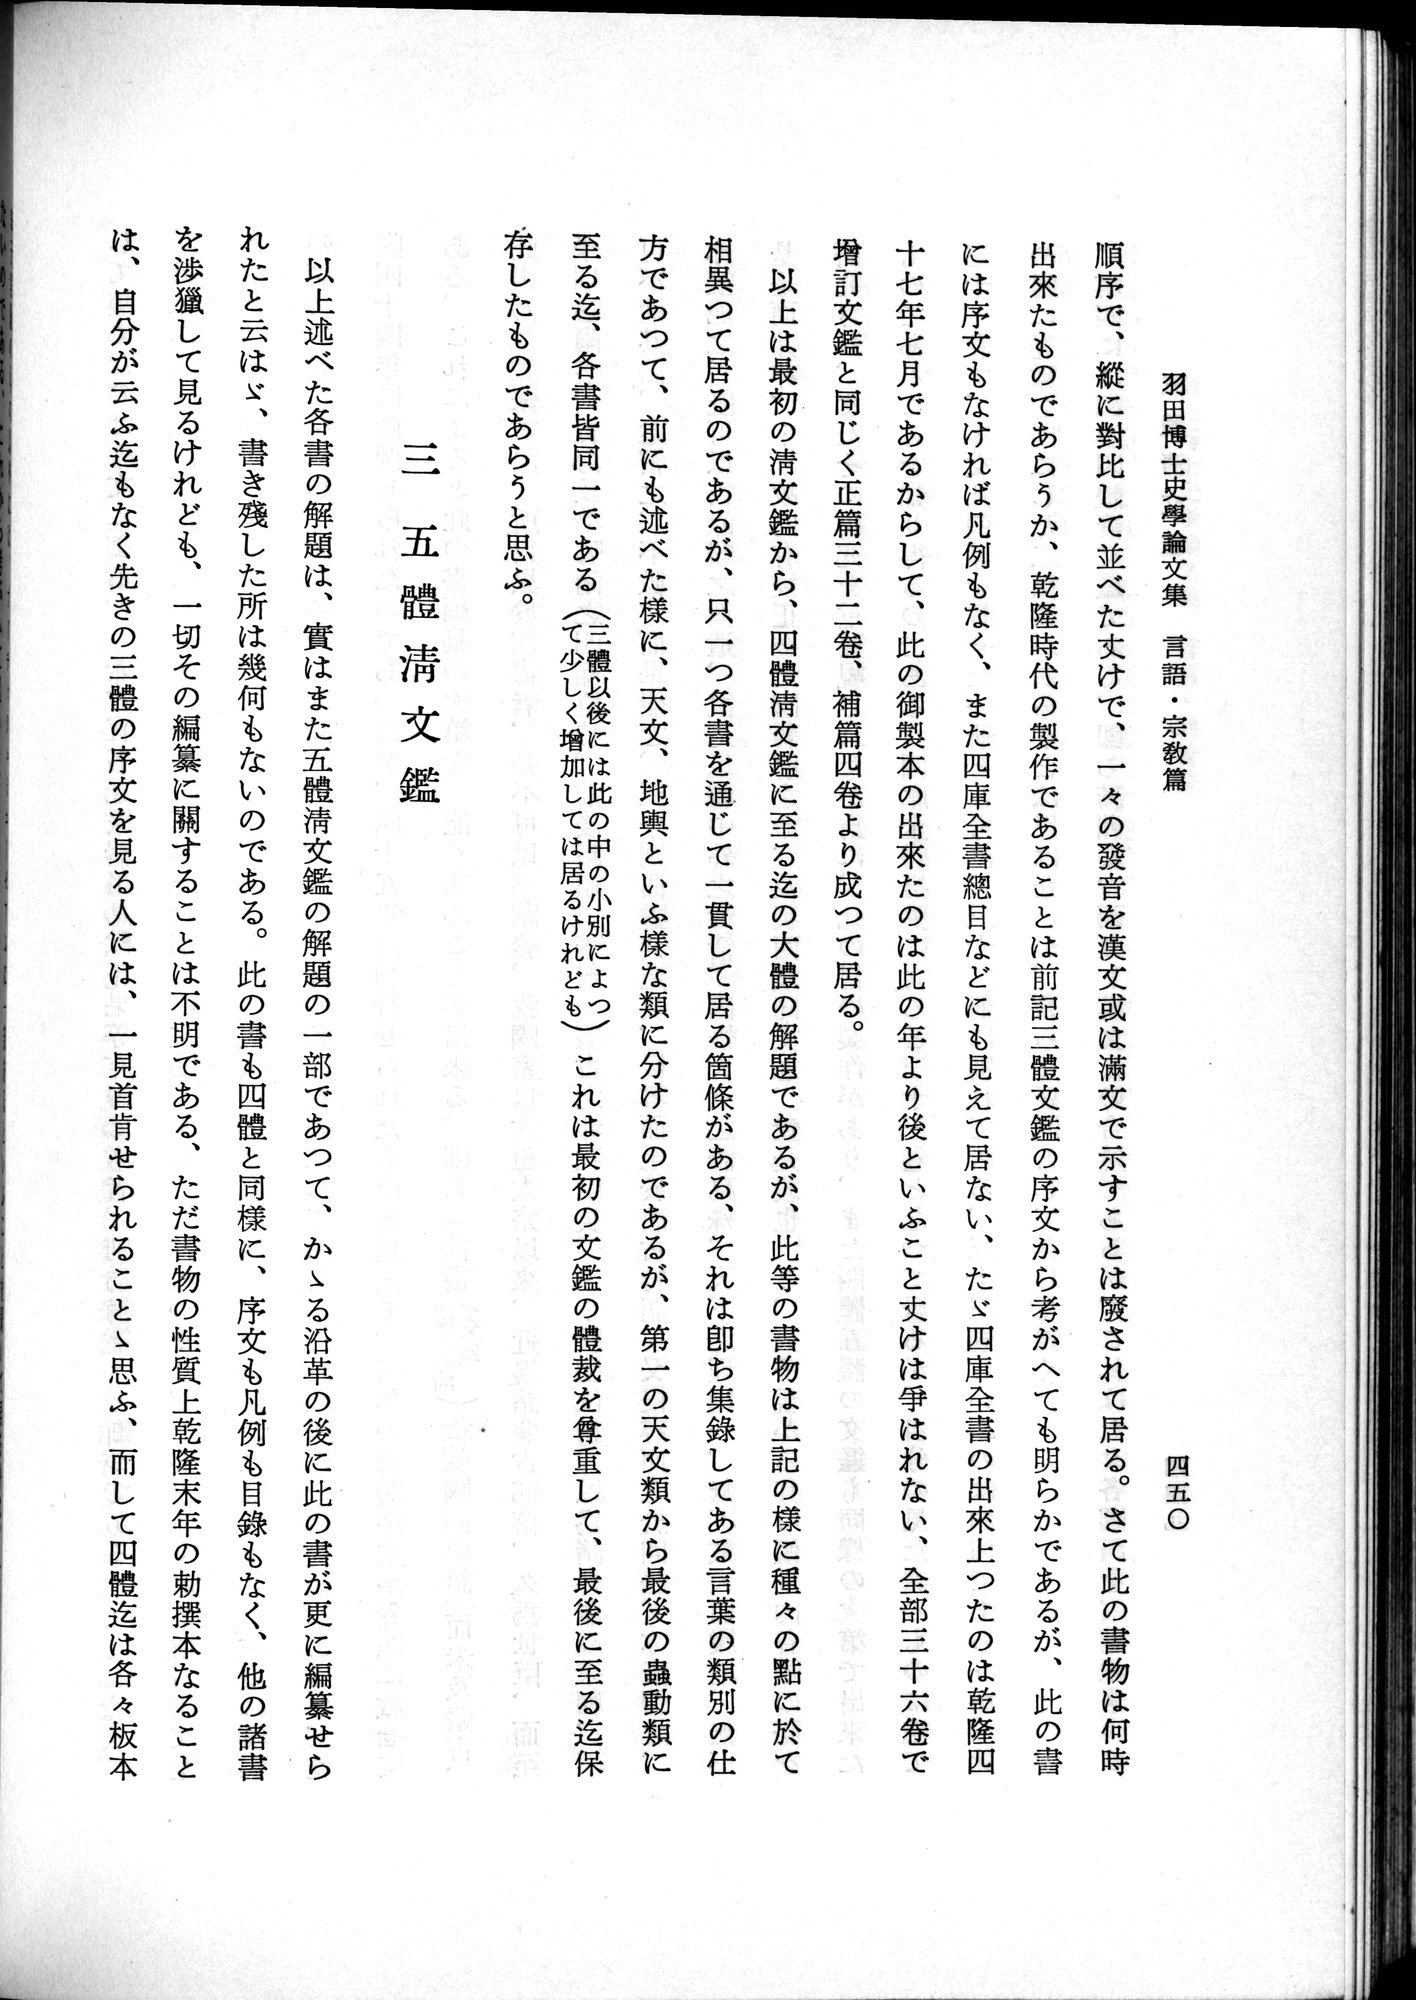 羽田博士史学論文集 : vol.2 / Page 512 (Grayscale High Resolution Image)